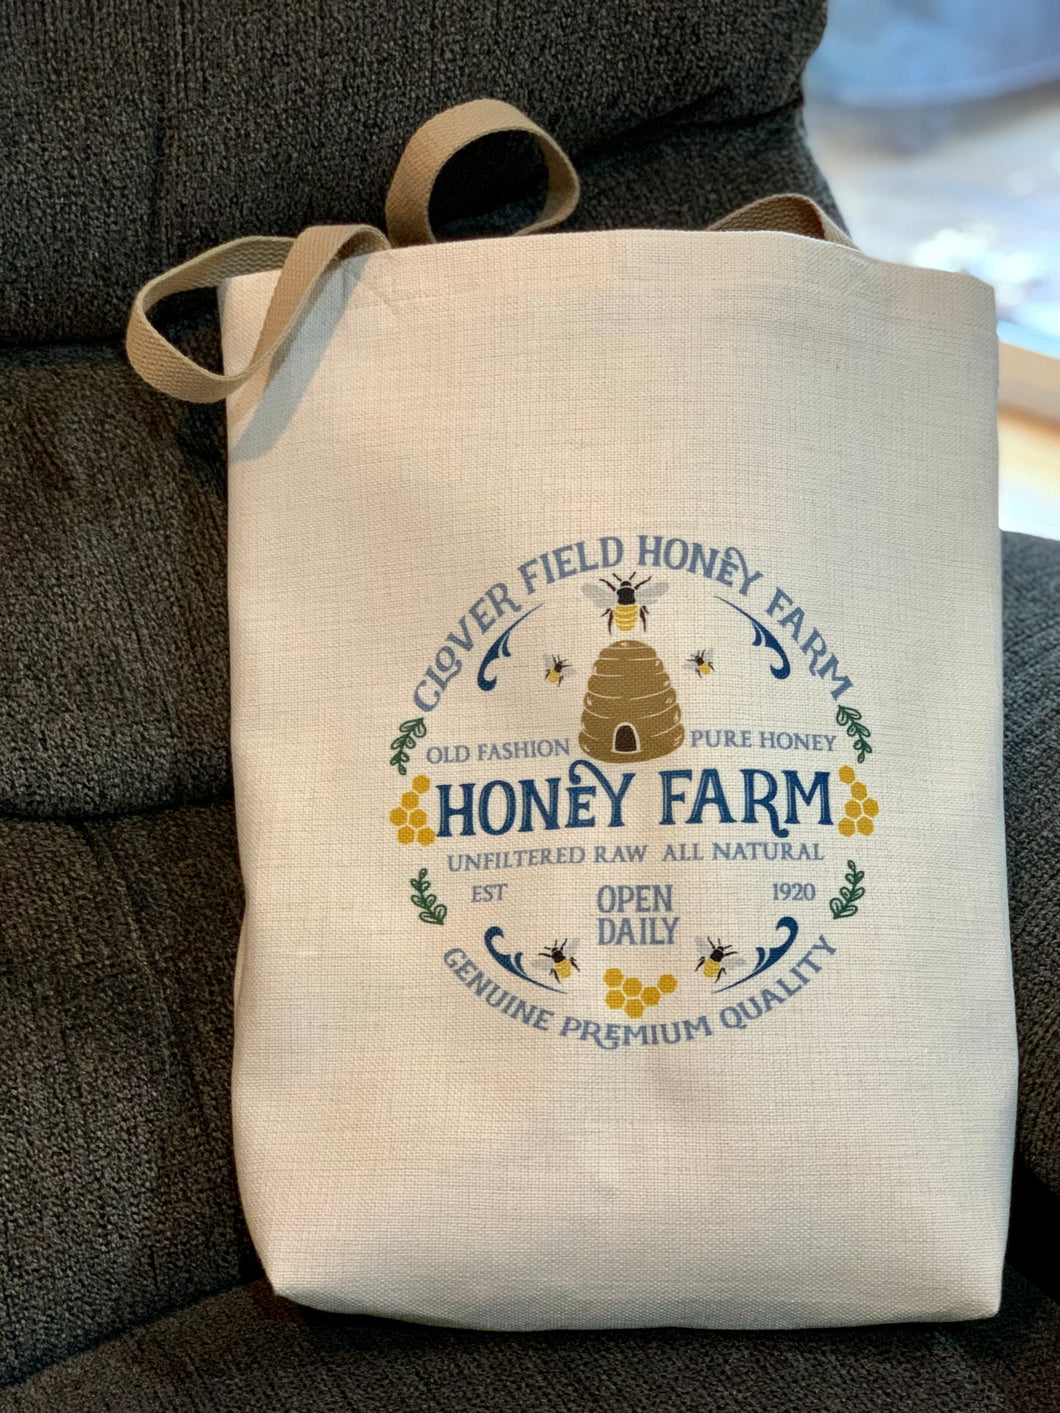 Honey Farm Artisan Tote Bag - Sonny Side Up 